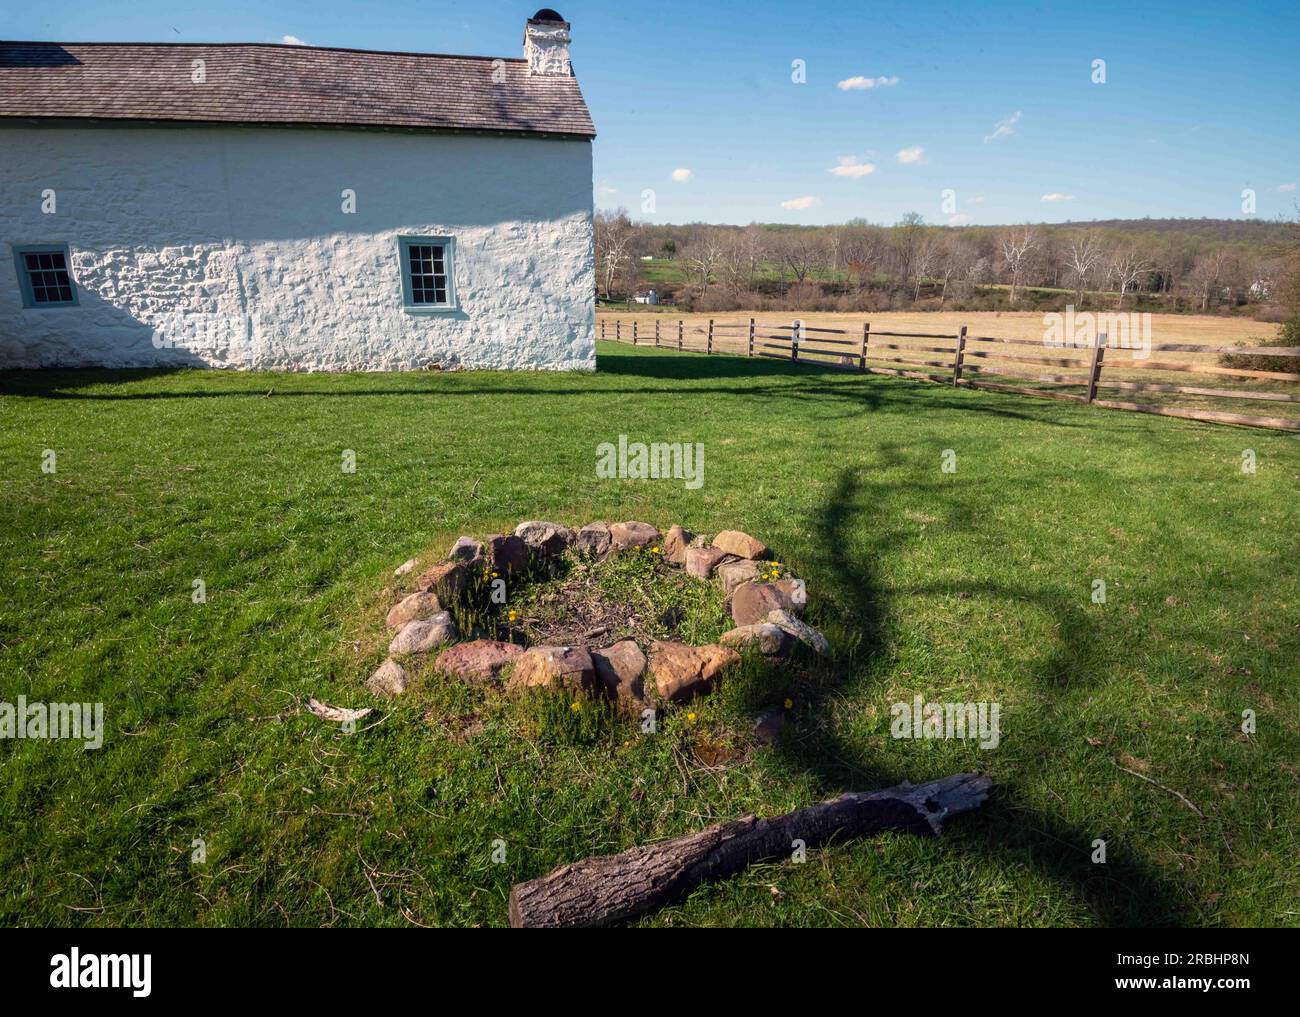 Koloniales amerikanisches Dorf mit idyllischem Häuschen aus weißem Stein in grünem Gras und einer Feuerstelle aus einem Steinring im Vordergrund. Weide und blauer Himmel Stockfoto